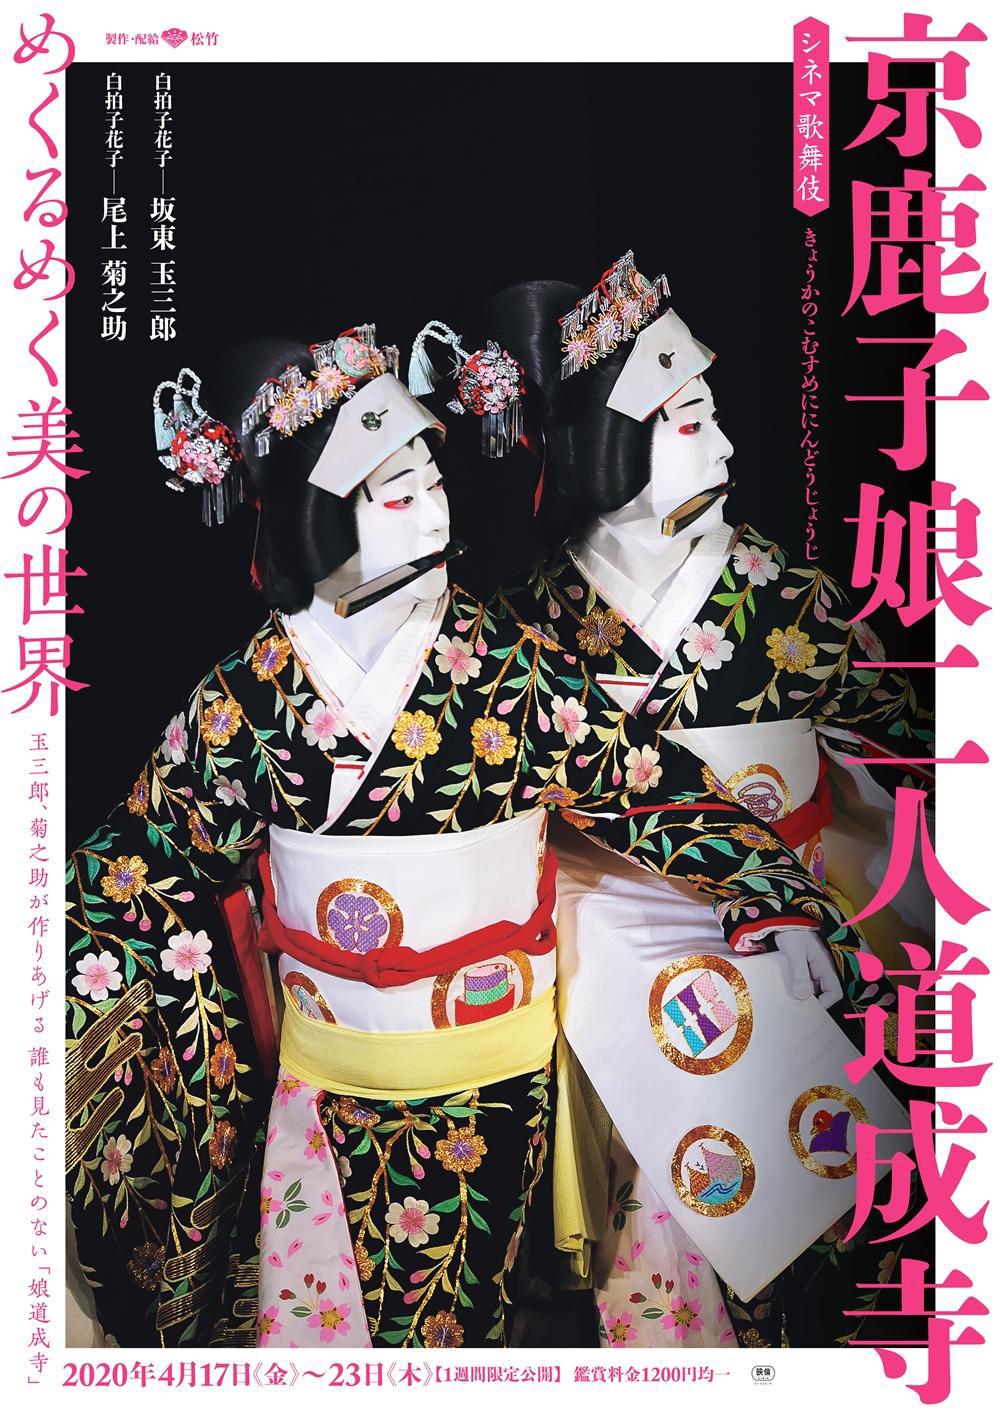 「シネマ歌舞伎イヤホンガイド」アプリ、《月イチ歌舞伎》に合わせて音声ガイドをリリース中